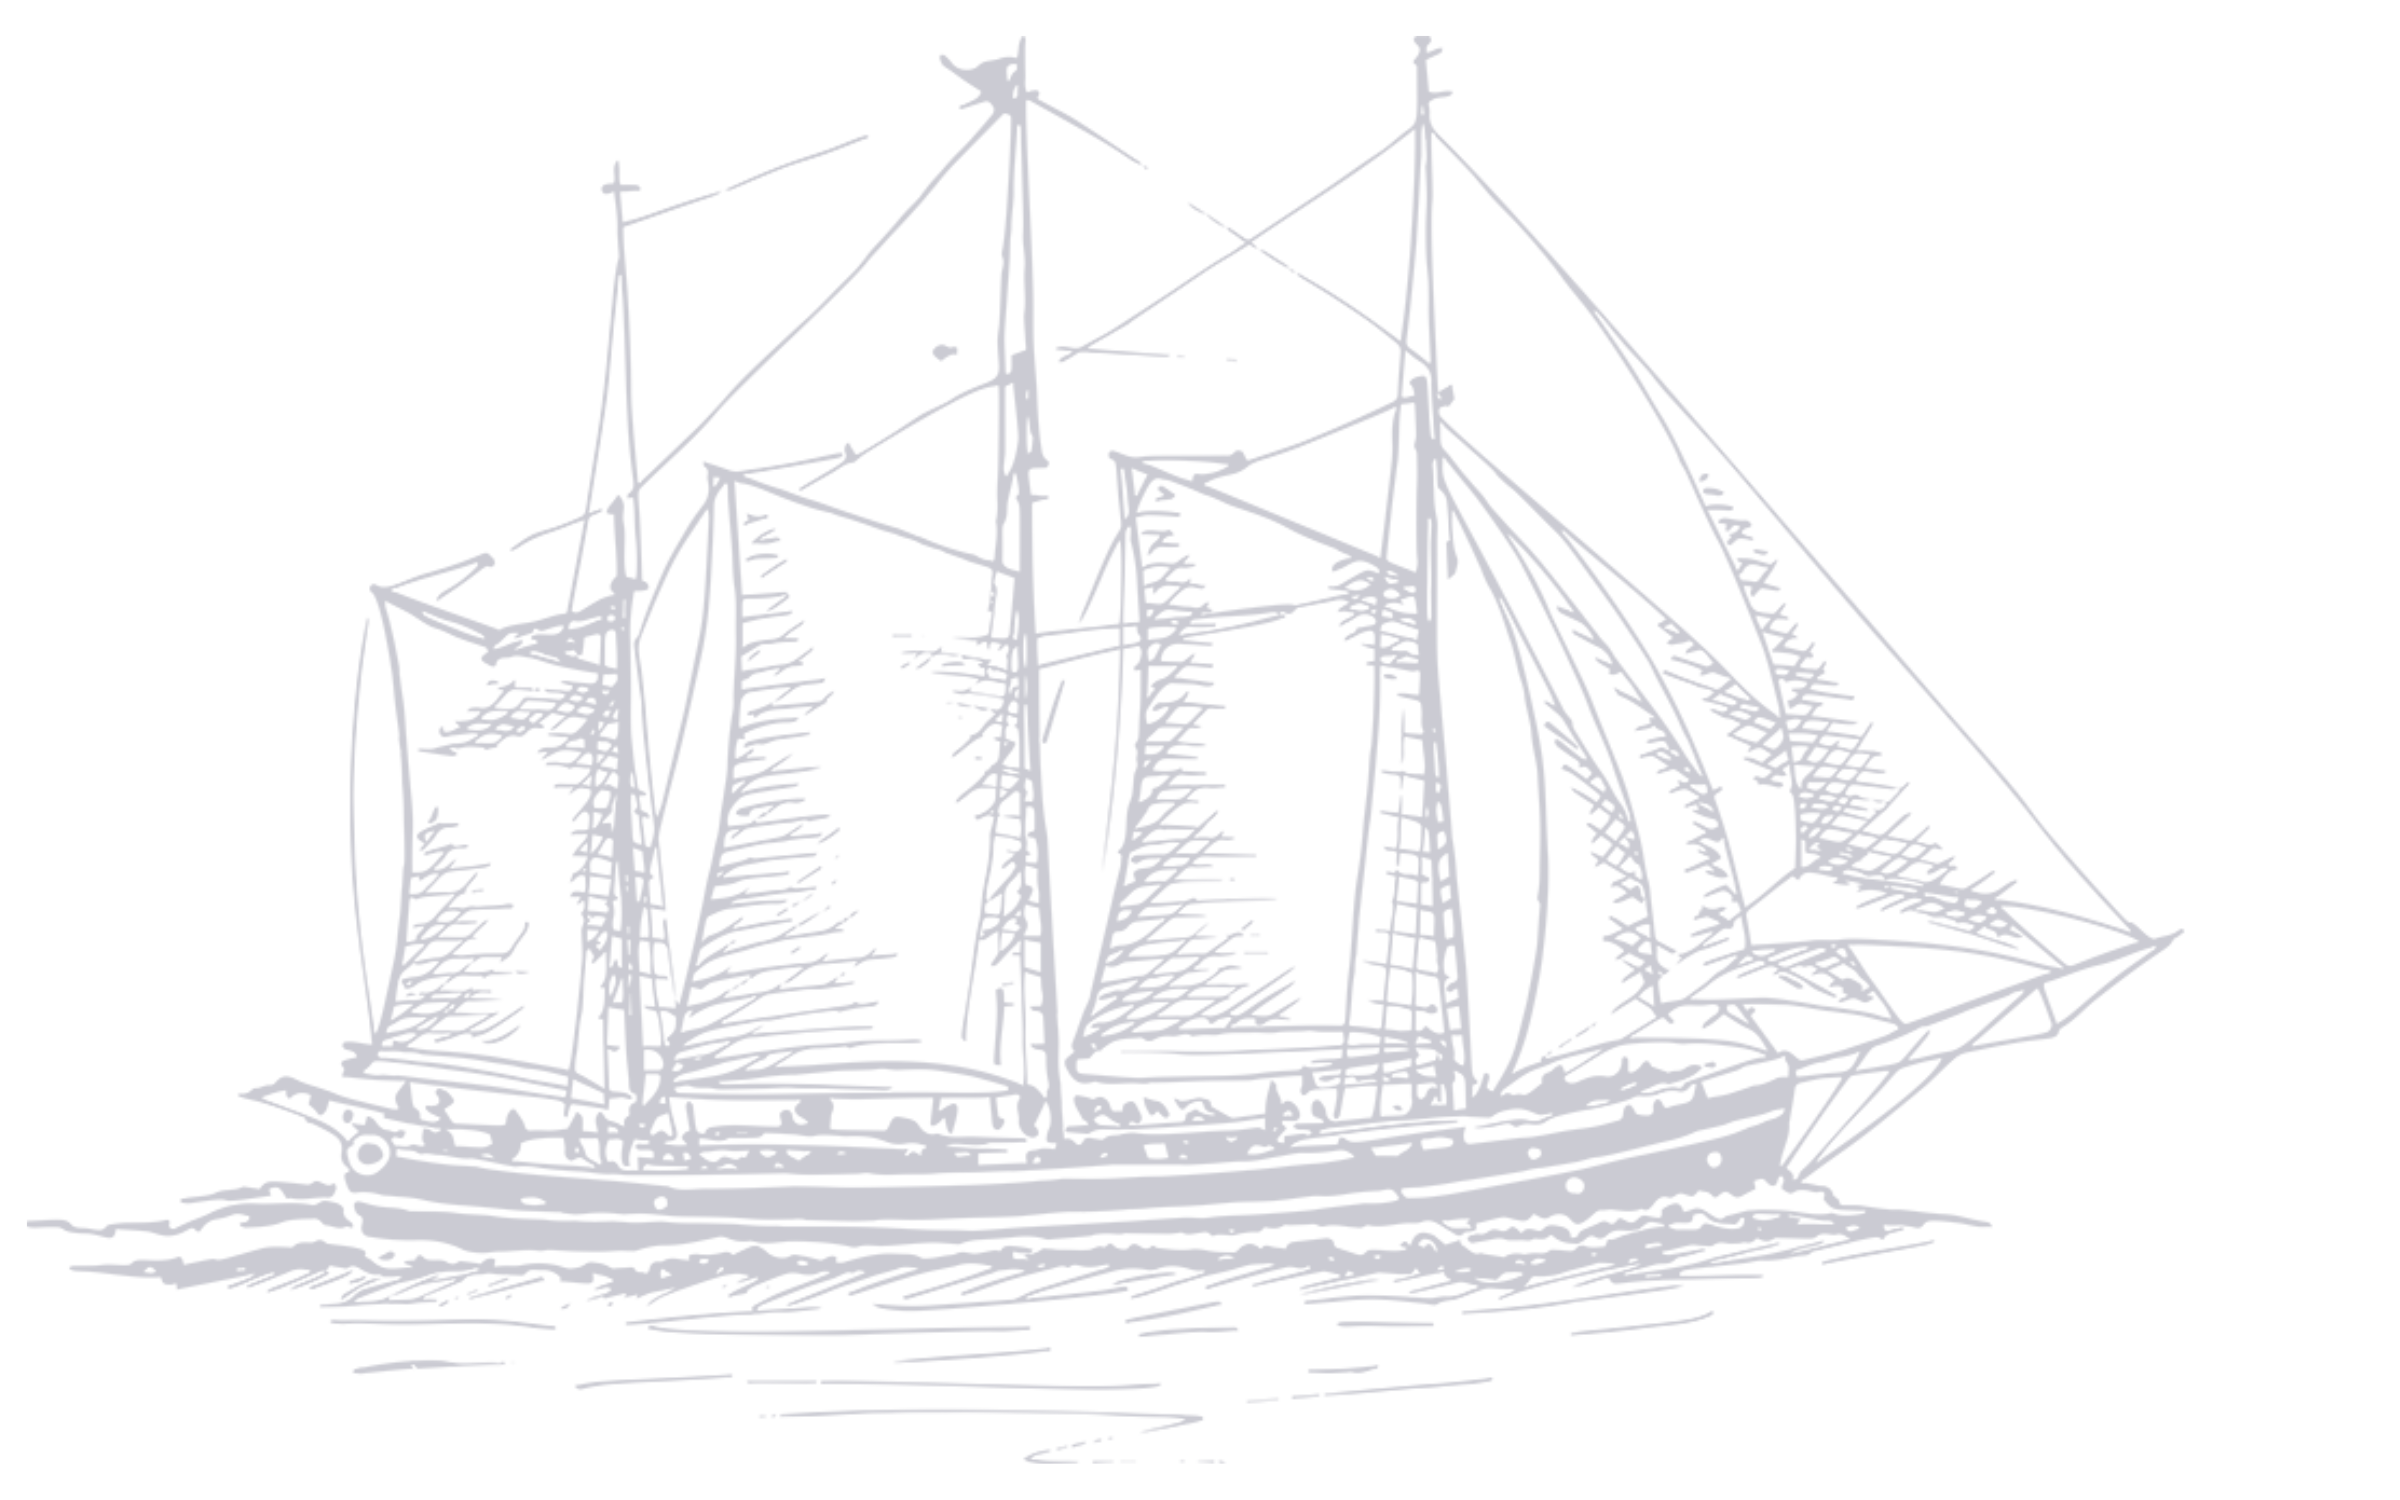 Illustration eines dreimastigen Segelschiffs auf dem Wasser.